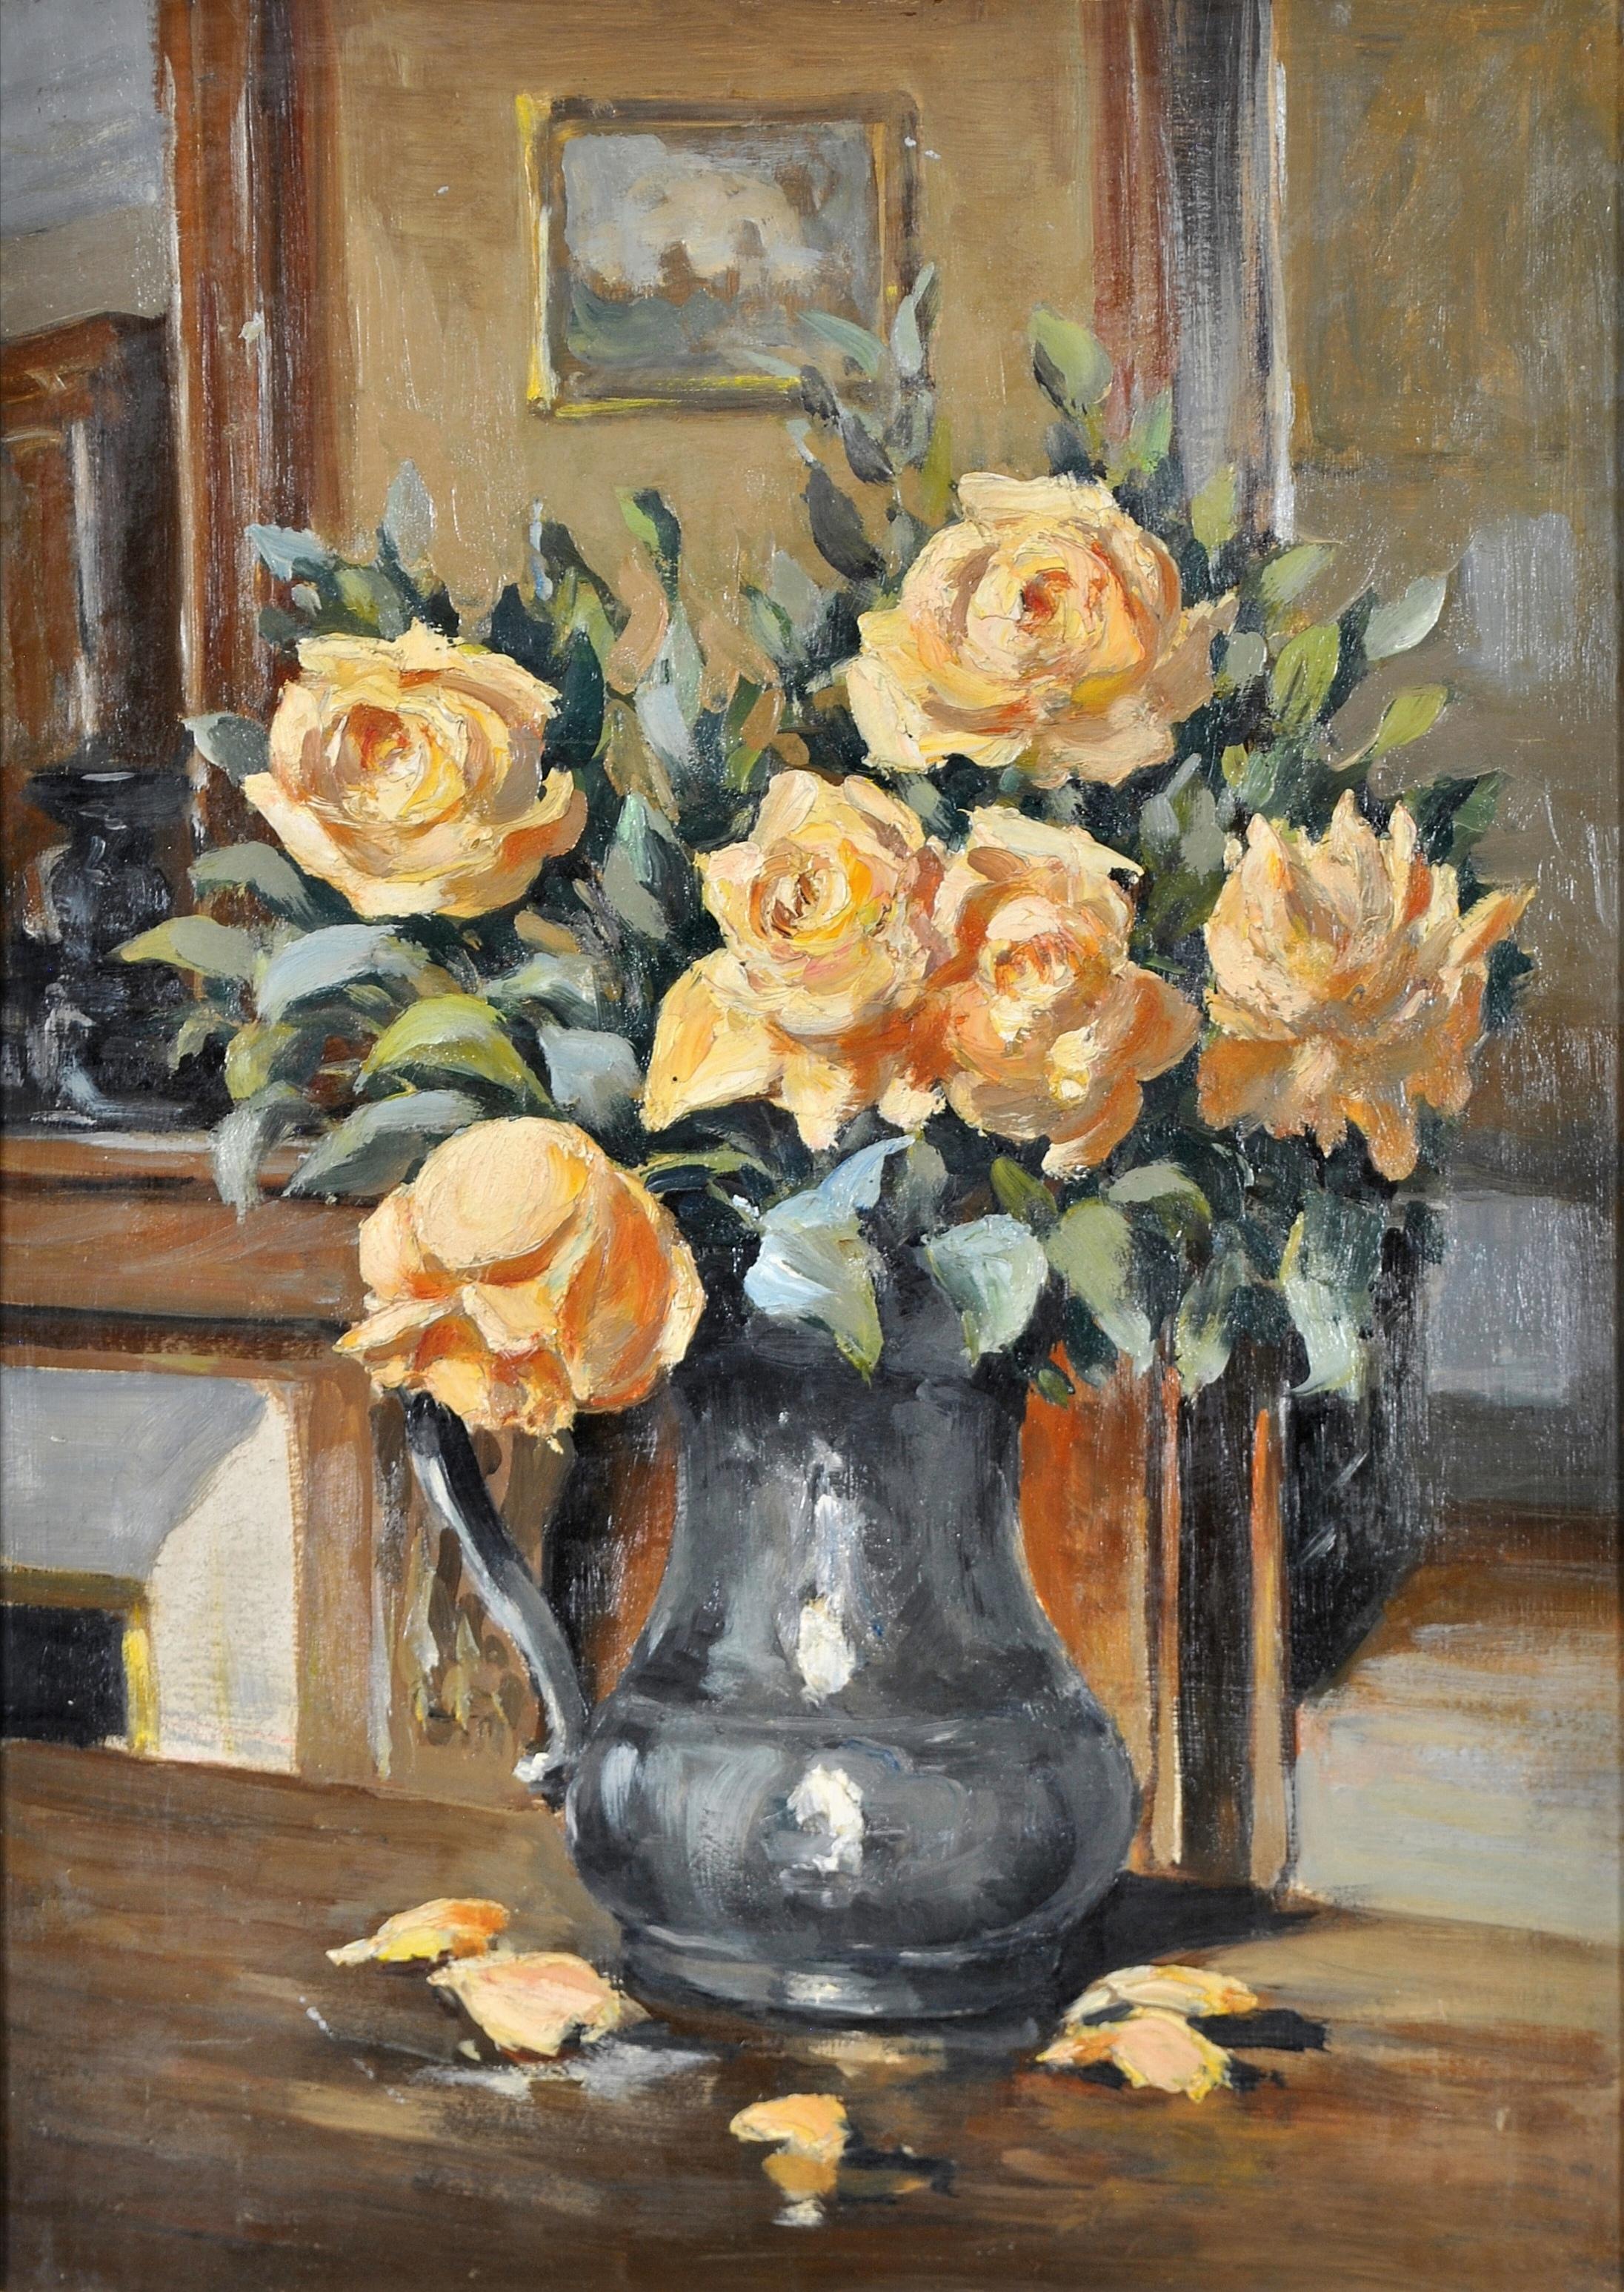 Roses dans une cruche - Nature morte à l'huile impressionniste française des années 1920 - Painting de Early 20th Century French School